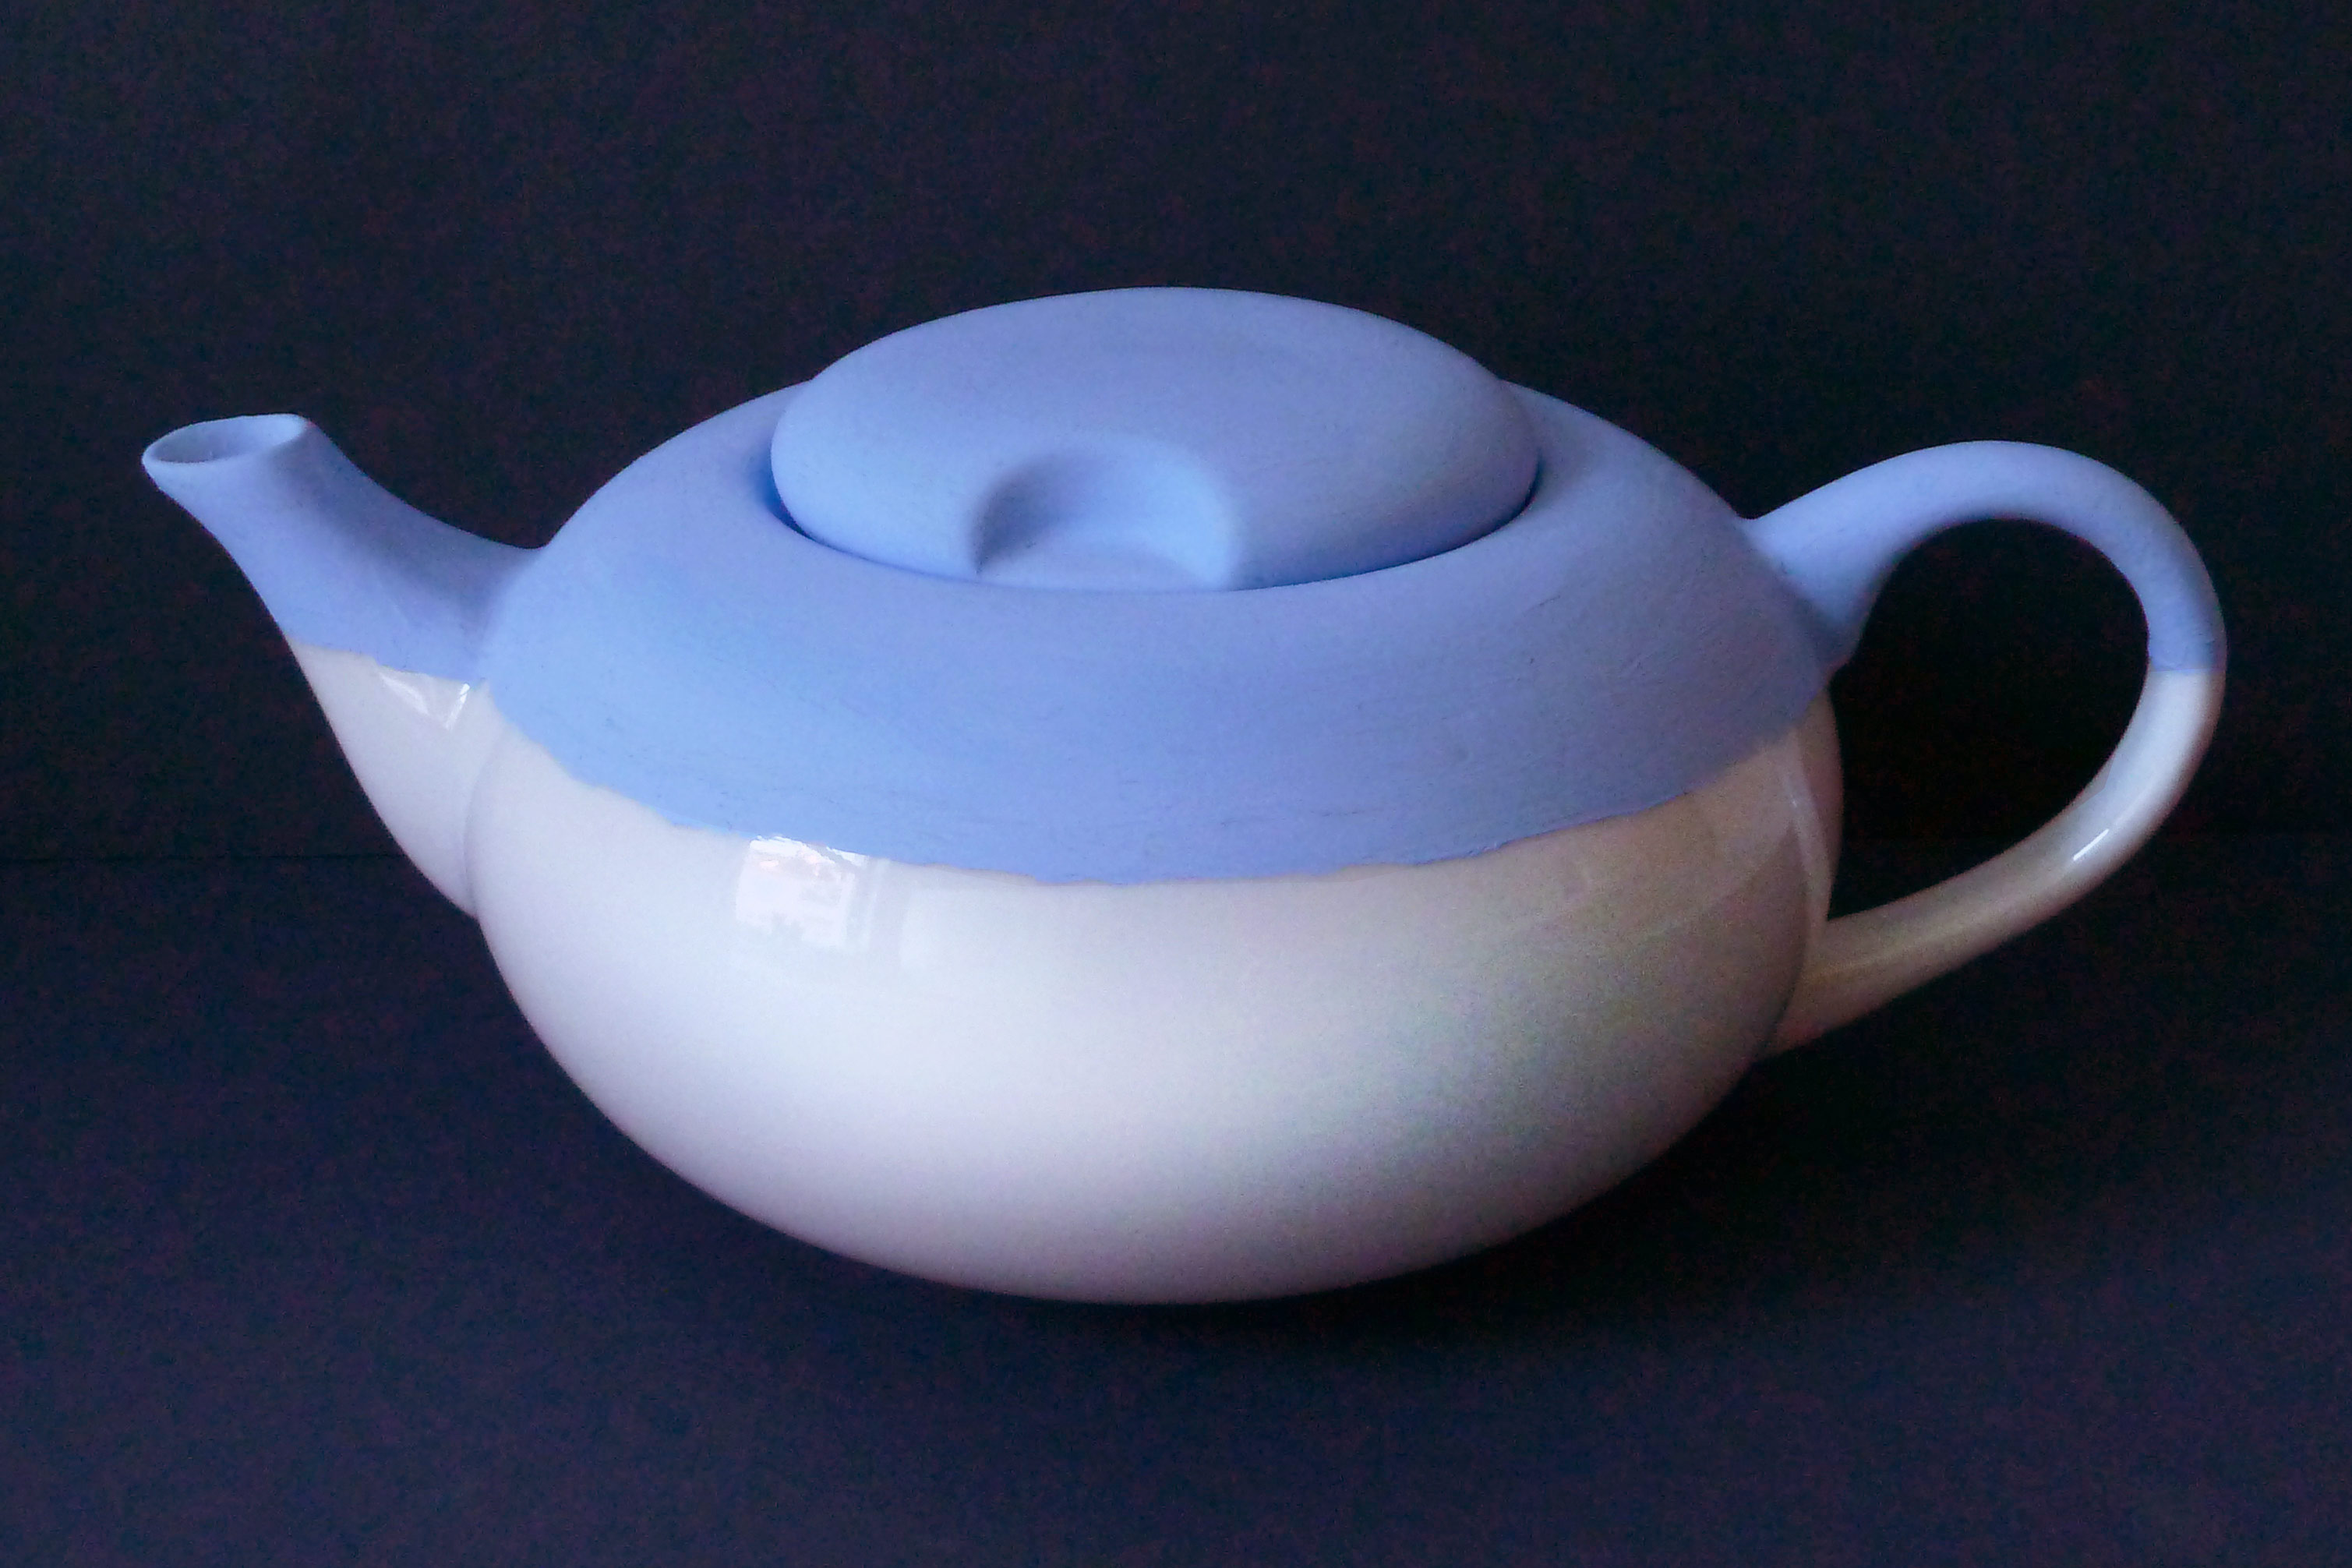 Blau weiß gestaltete Teekanne victim pot